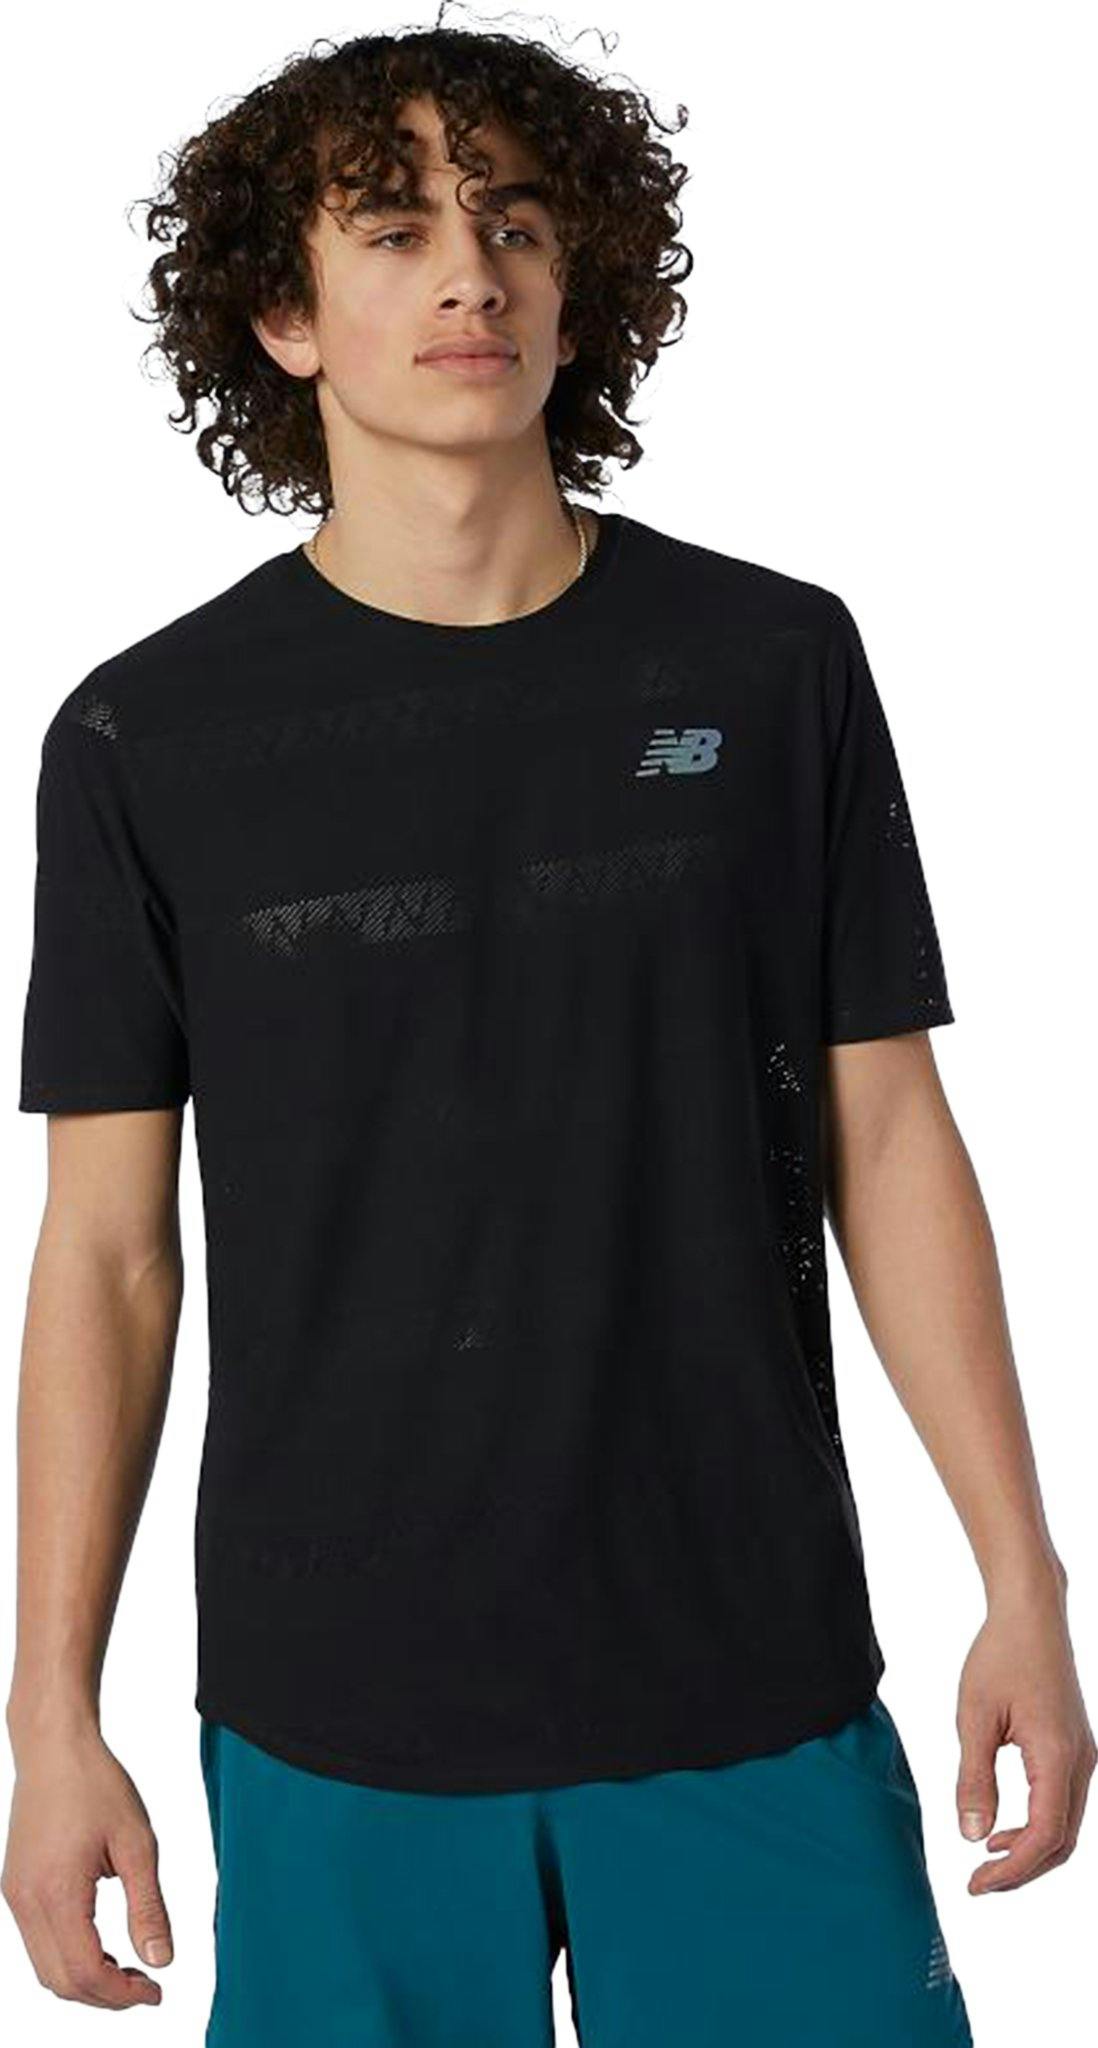 Numéro de l'image de la galerie de produits 1 pour le produit T-shirt à manches courtes Q Speed Jacquard - Homme